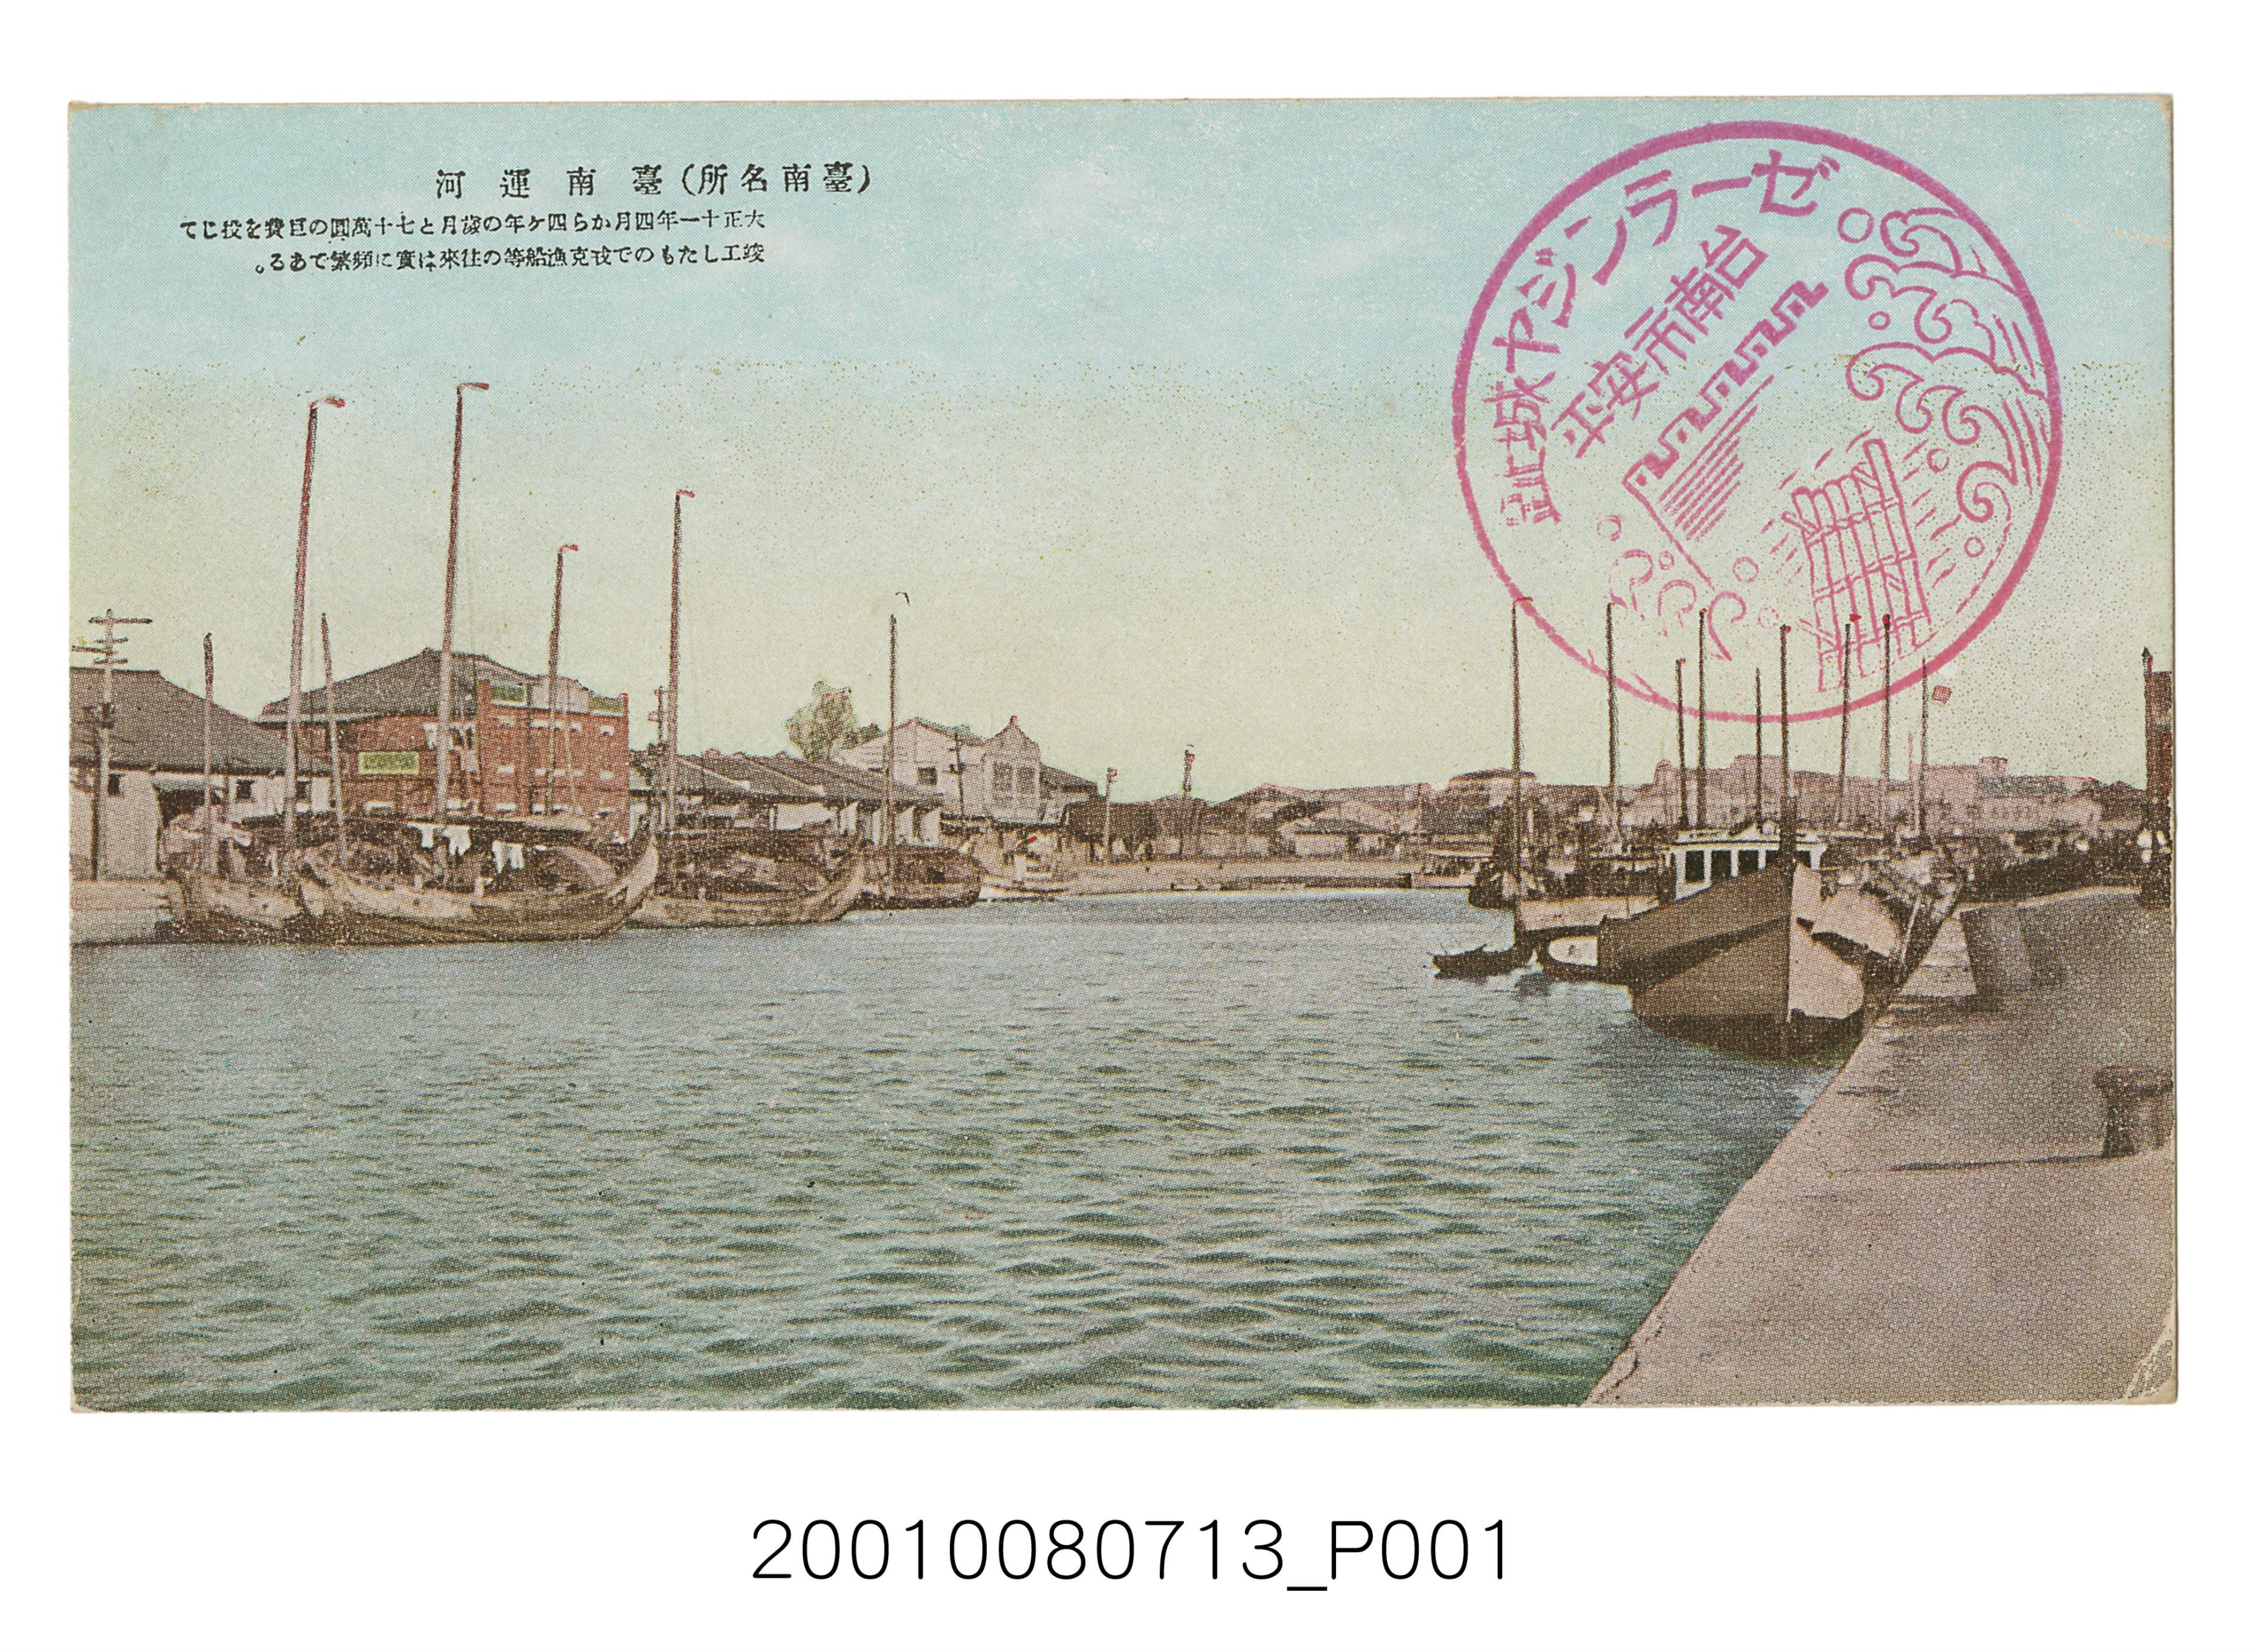 臺南名所臺南運河 (共2張)